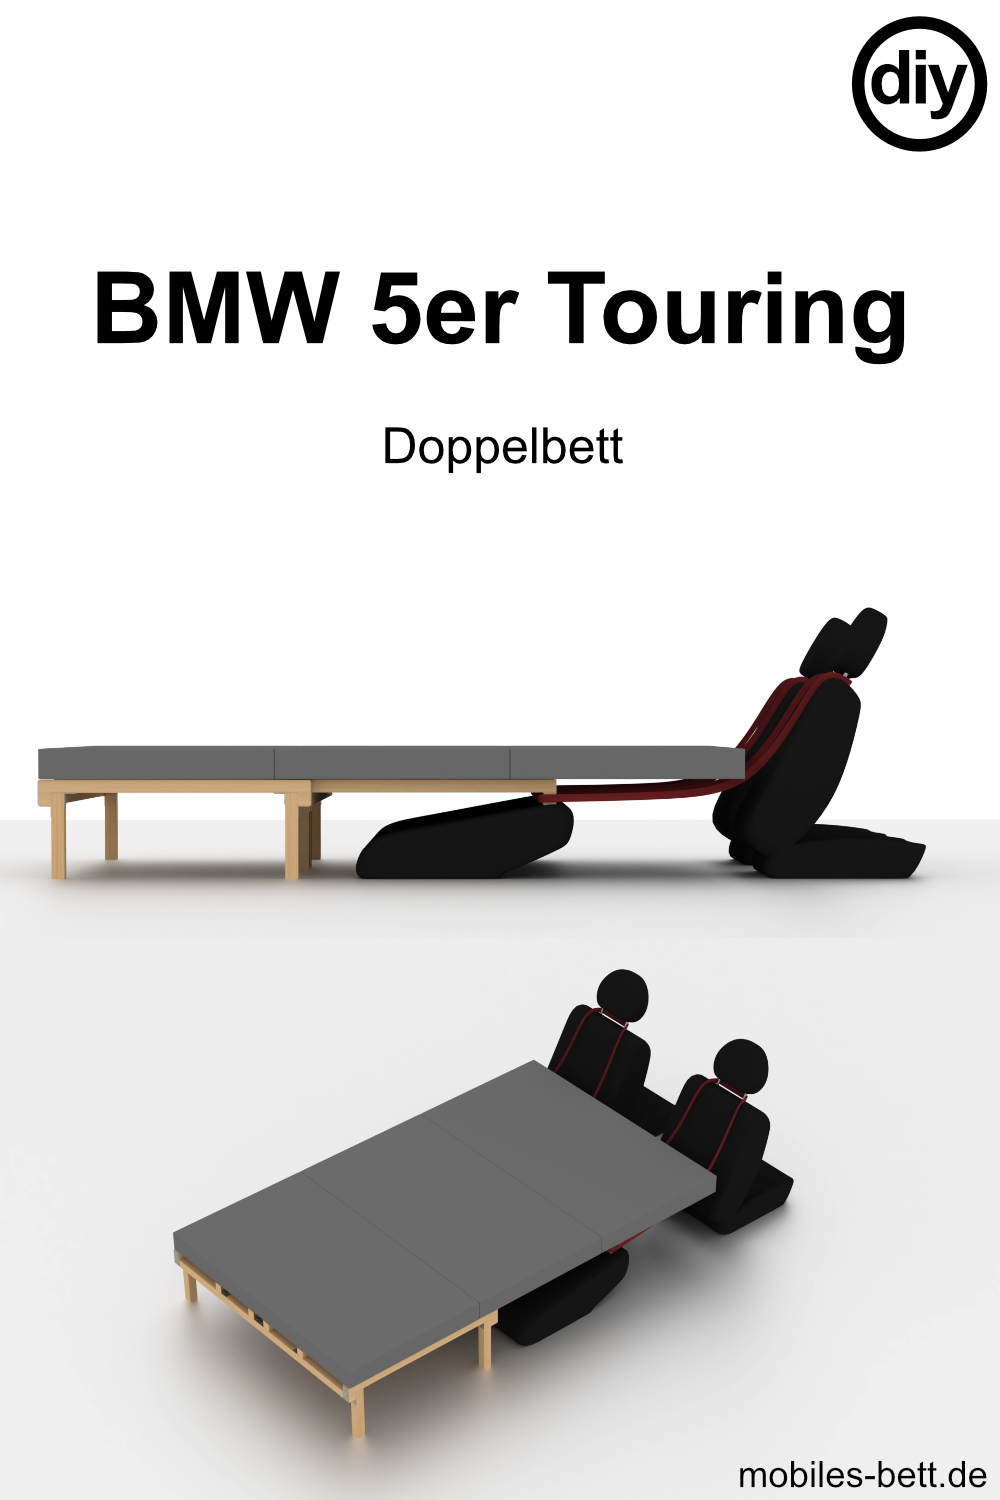 bmw-5er-touring-doppelbett